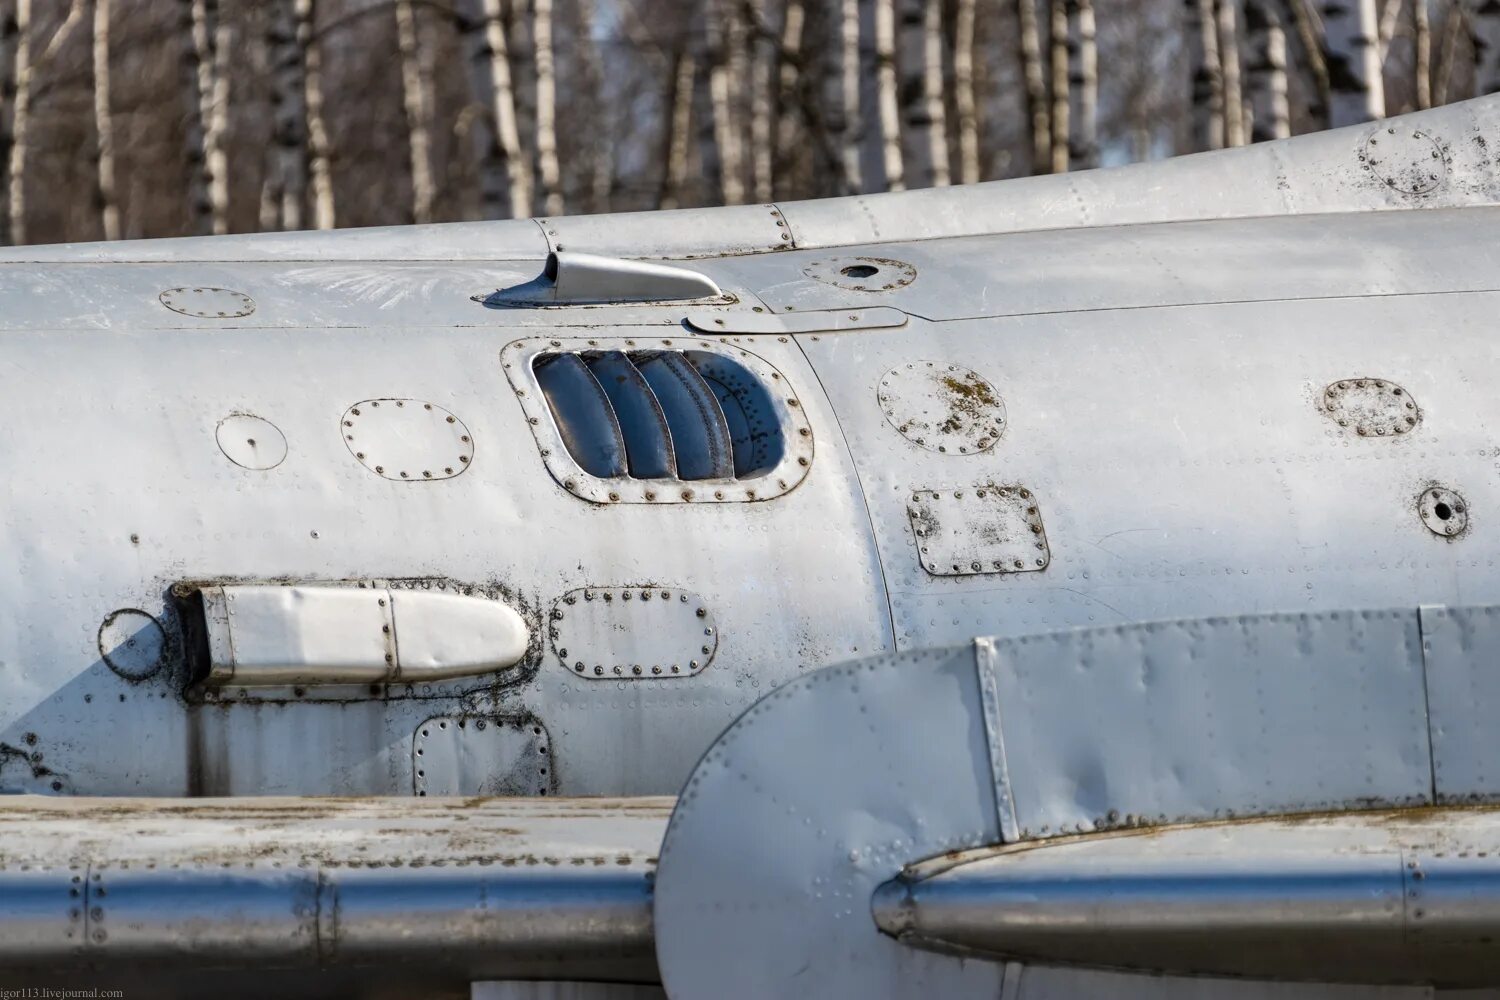 23 07 б. Истребитель-бомбардировщик Су-7б. Су-7 самолет. Су-7б самолет. Истребитель - бомбардировщик Су-7бкл.